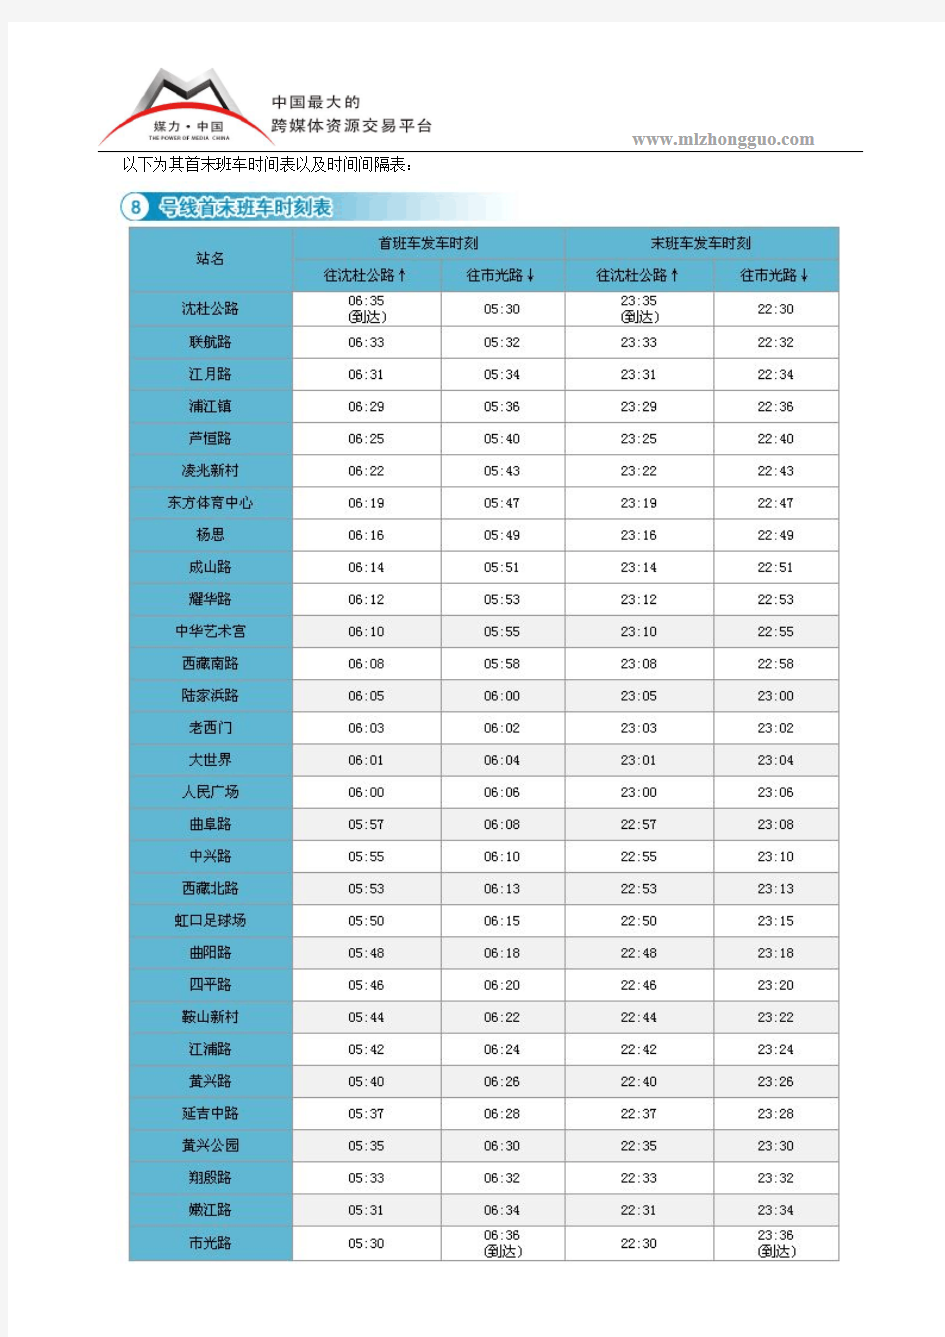 2016年上海地铁9号线车辆运营数据表